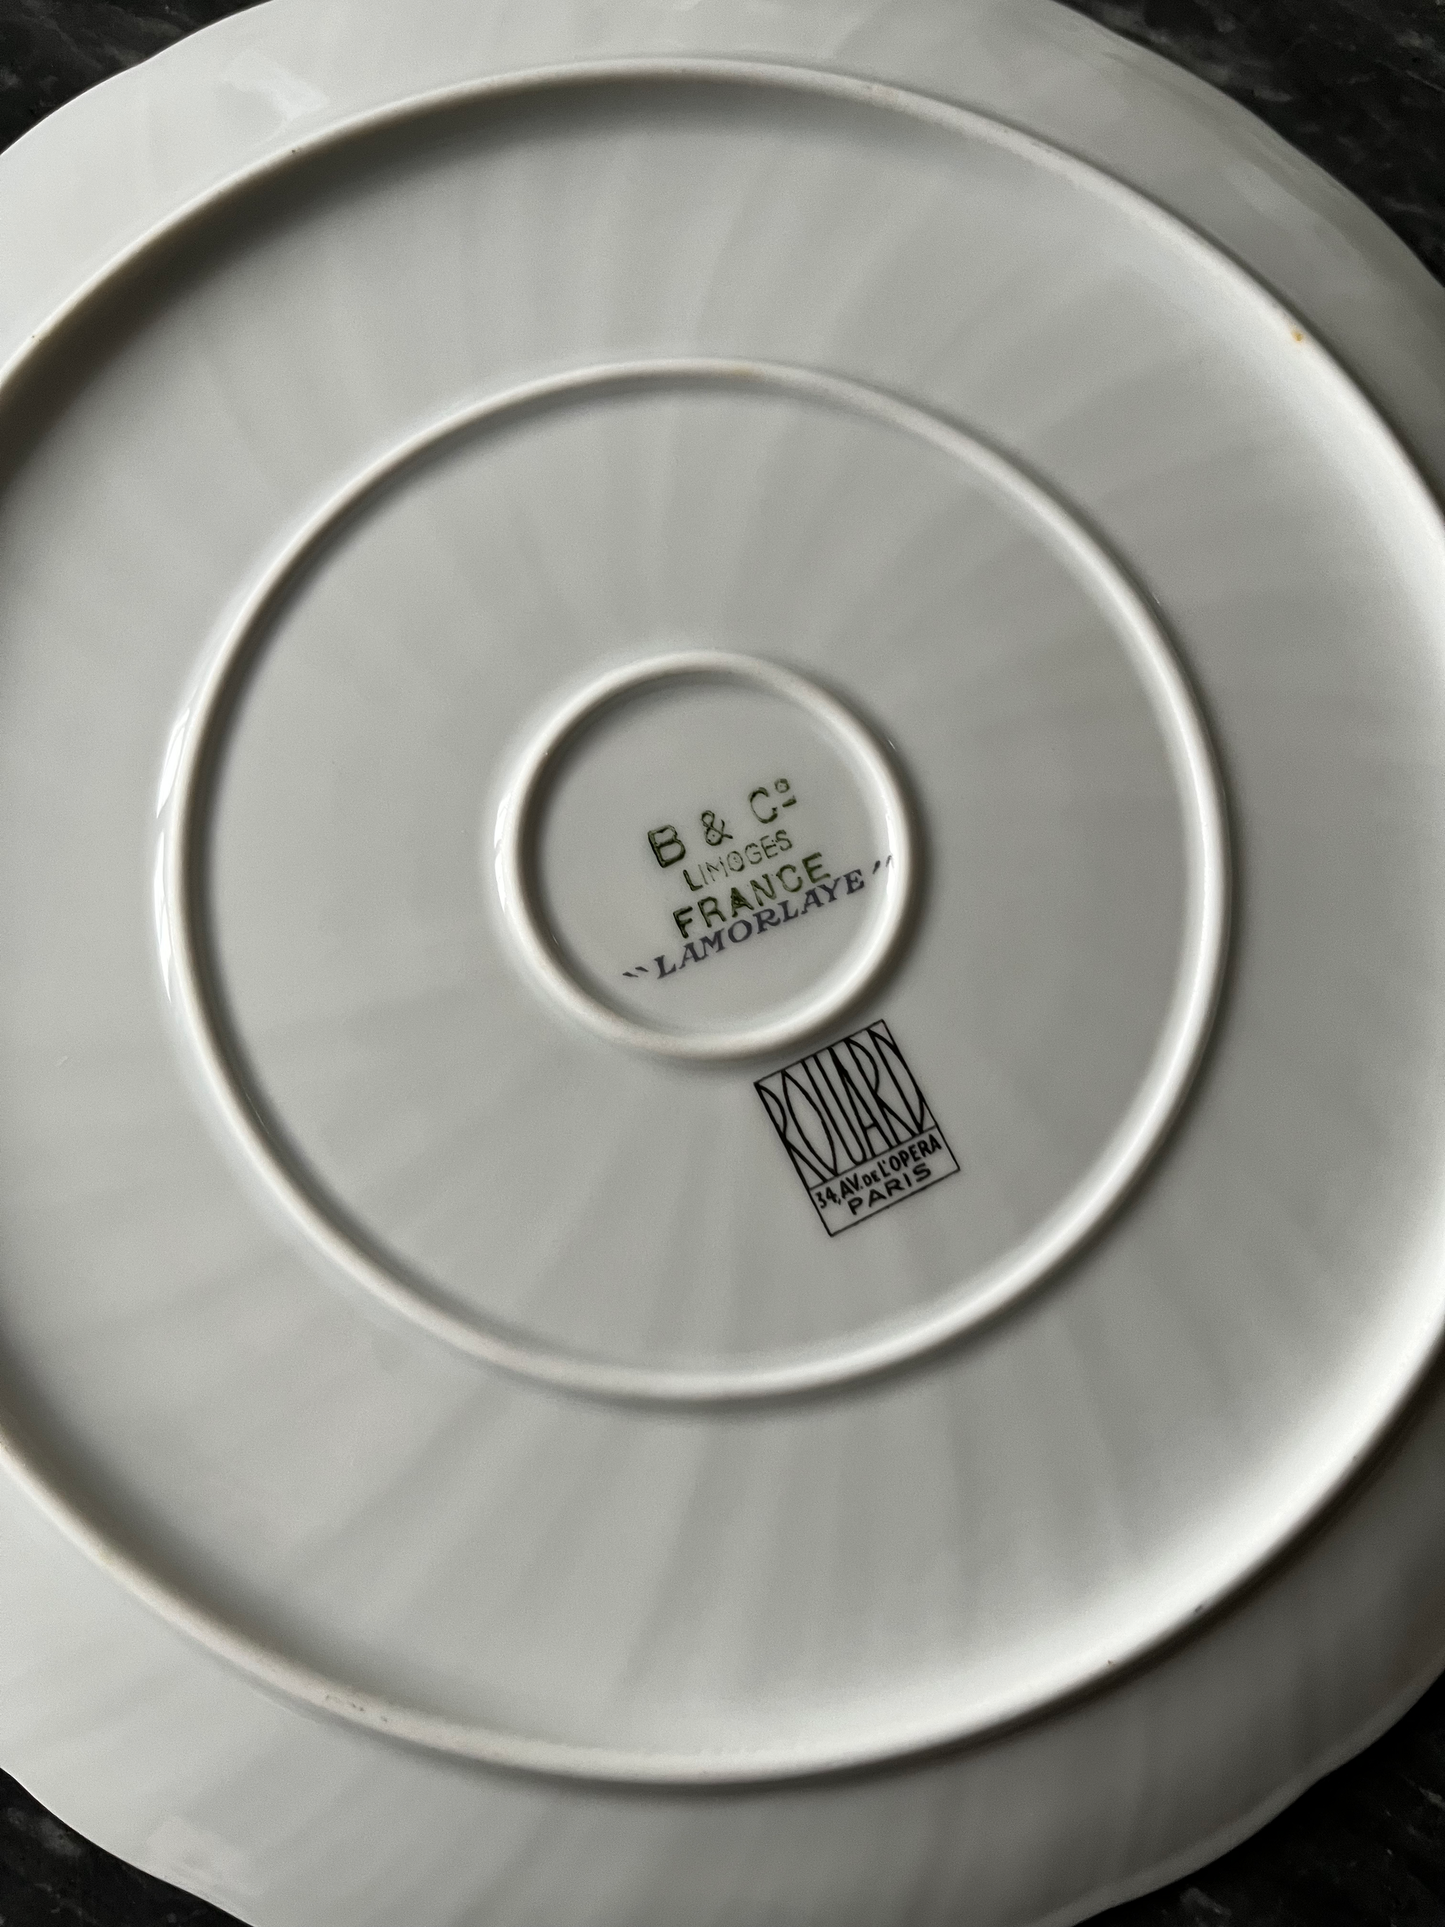 Tea cups and plates signed Rouard and Bernardaud